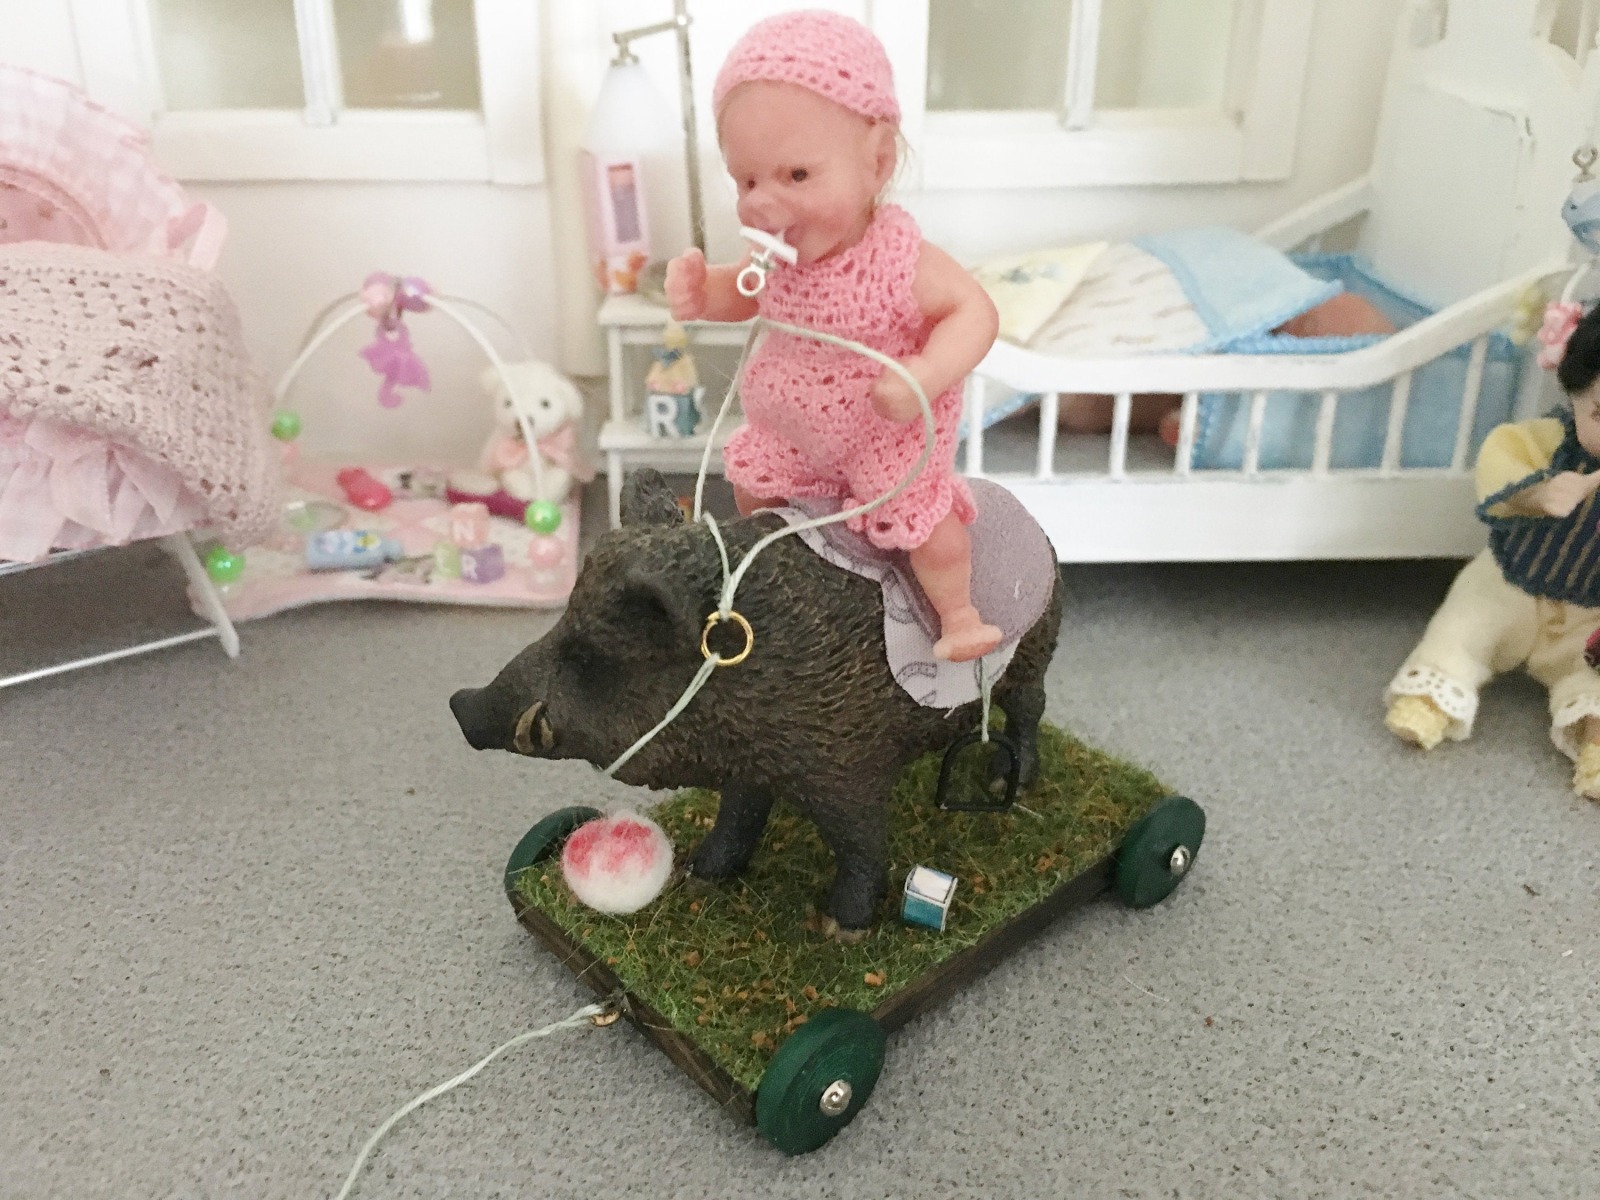 Wildschwein Keiler Reit-und Zugtier für Kinder in Miniatur 1:12 Spielzeug für das Puppenhaus Kind